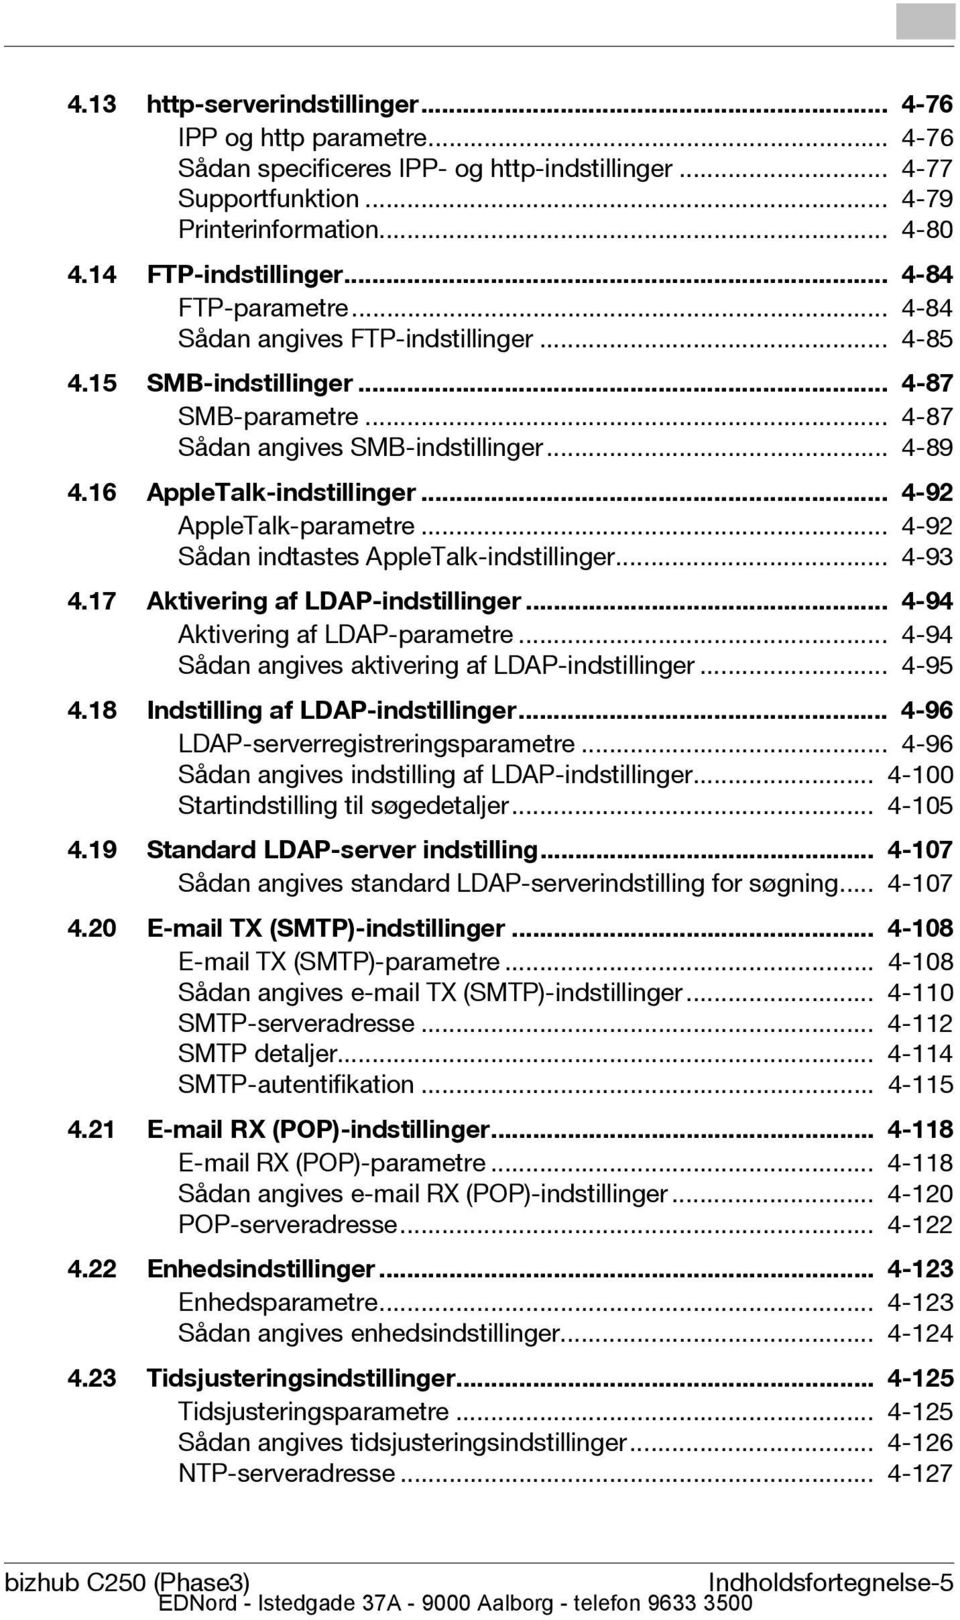 .. 4-92 AppleTalk-parametre... 4-92 Sådan indtastes AppleTalk-indstillinger... 4-93 4.17 Aktivering af LDAP-indstillinger... 4-94 Aktivering af LDAP-parametre.